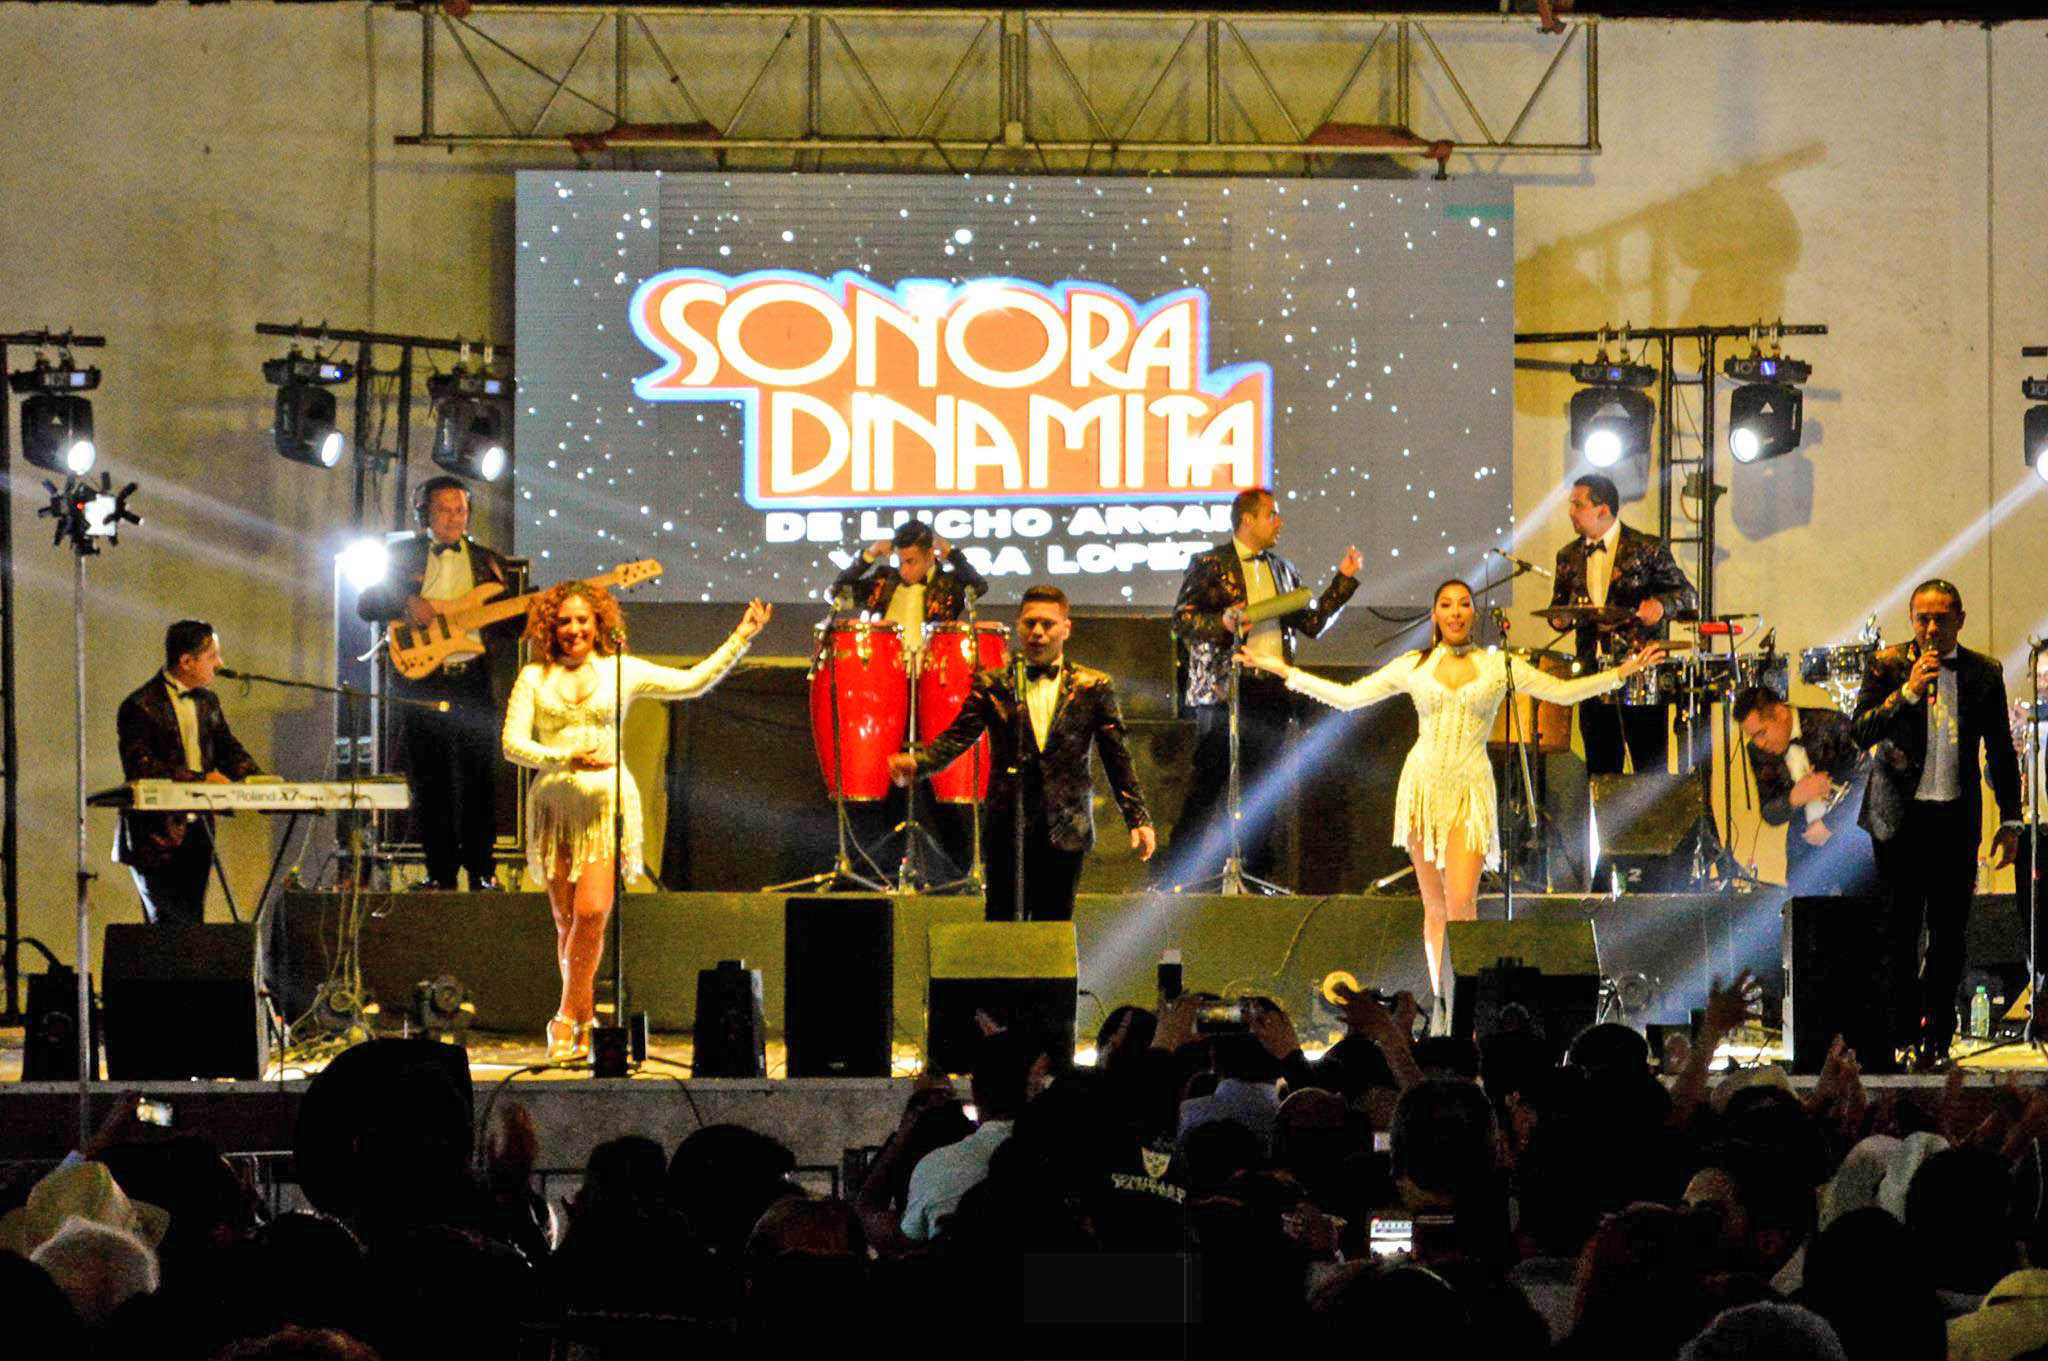 La Sonora Dinamita será una de las orquestas que participará en el evento.